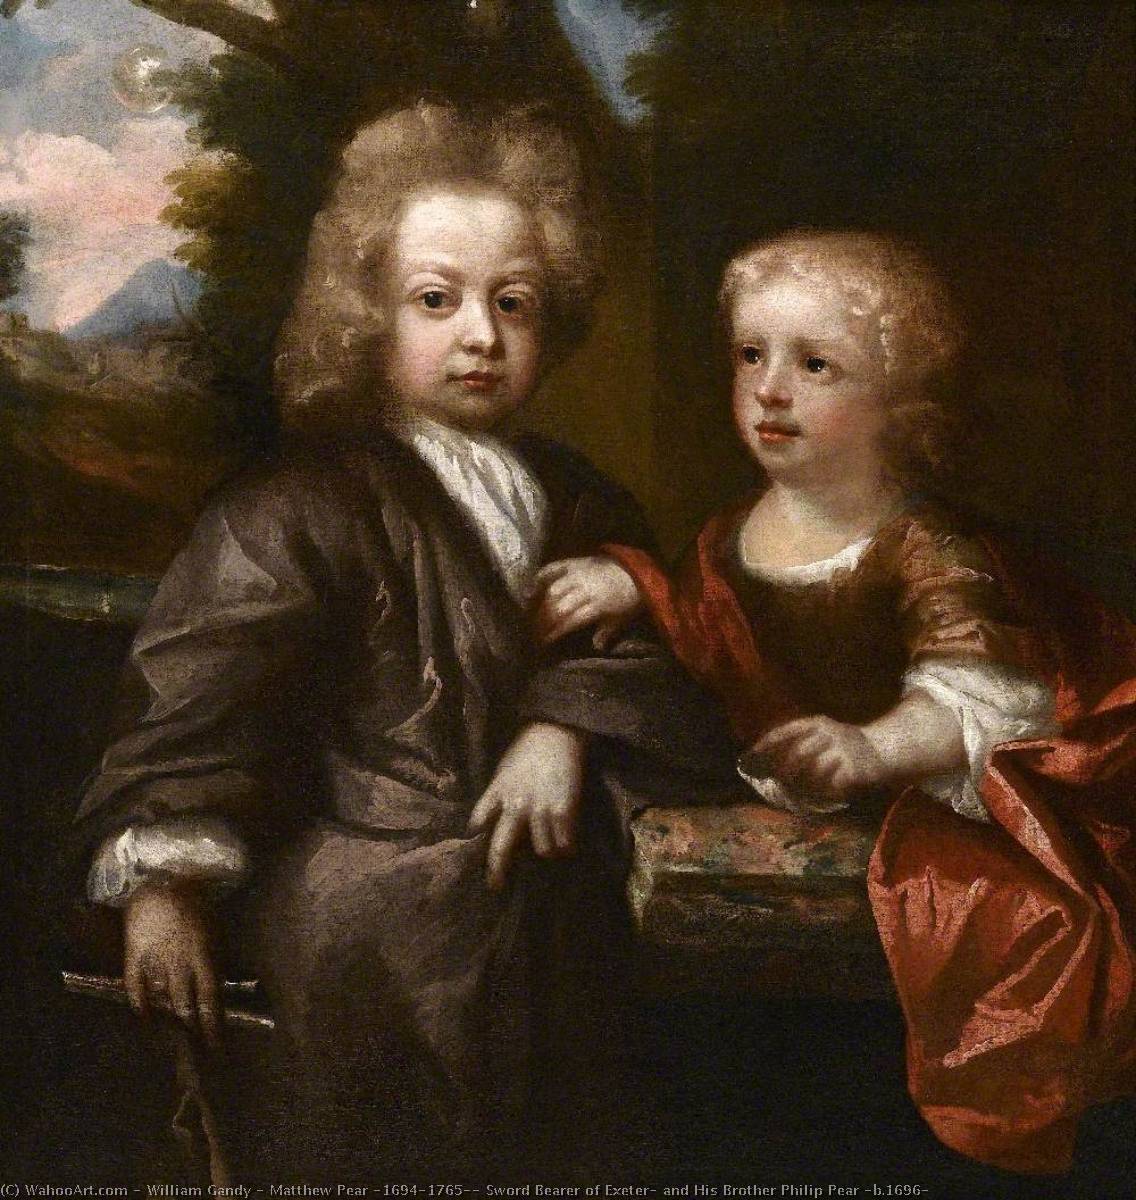 WikiOO.org – 美術百科全書 - 繪畫，作品 William Gandy - 马修 梨 ( 1694–1765 ) , 剑 来人 的 埃克塞特 , 和他的 兄弟 菲利普 梨 ( 乙 . 1696 )